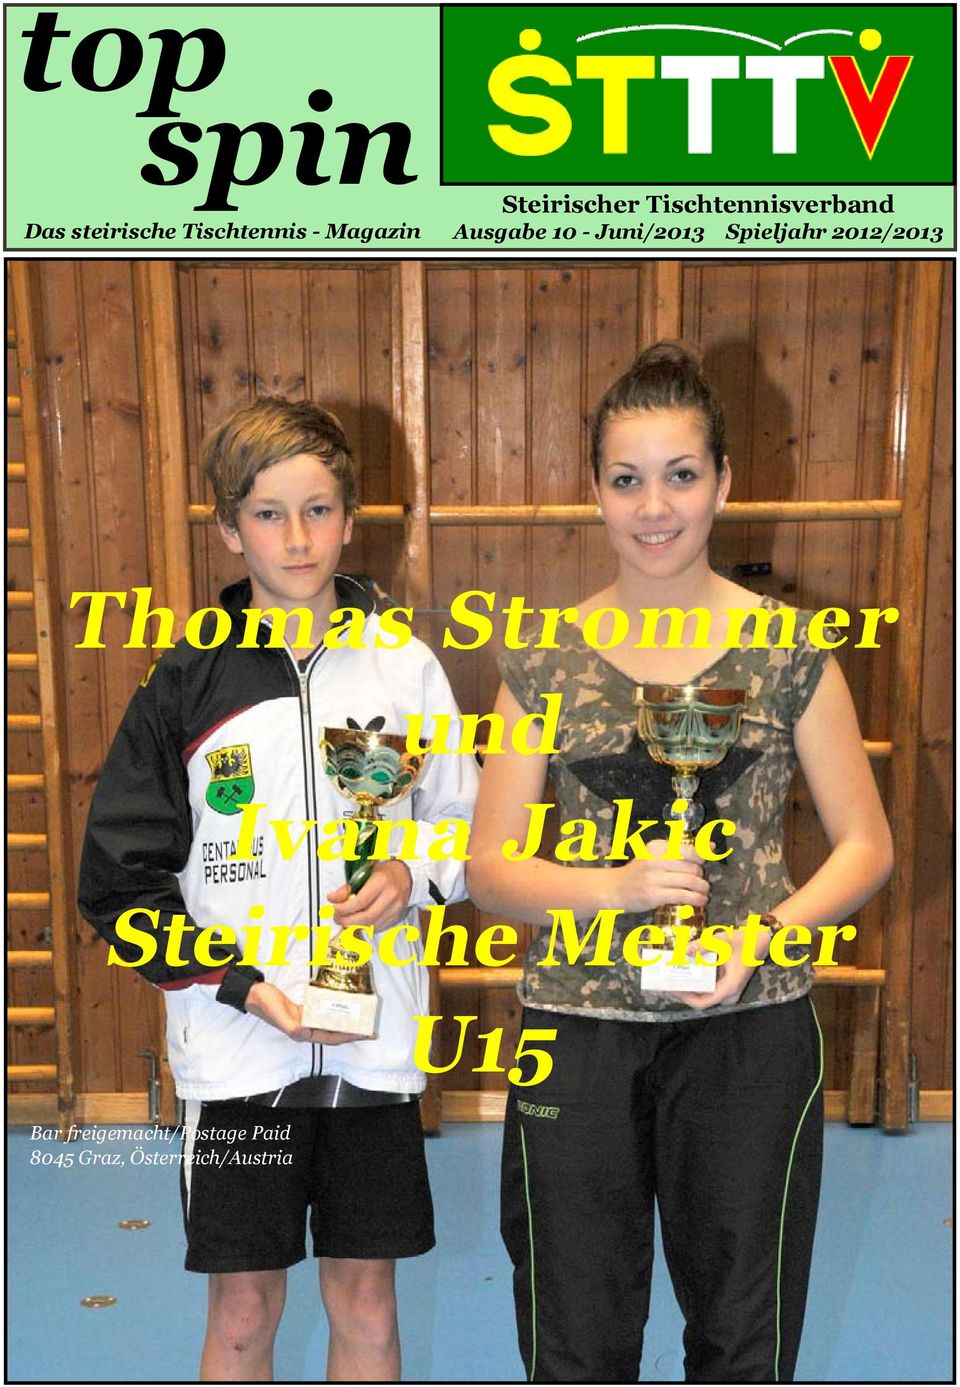 Thomas Strommer und Ivana Jakic Steirische Meister U15 Bar